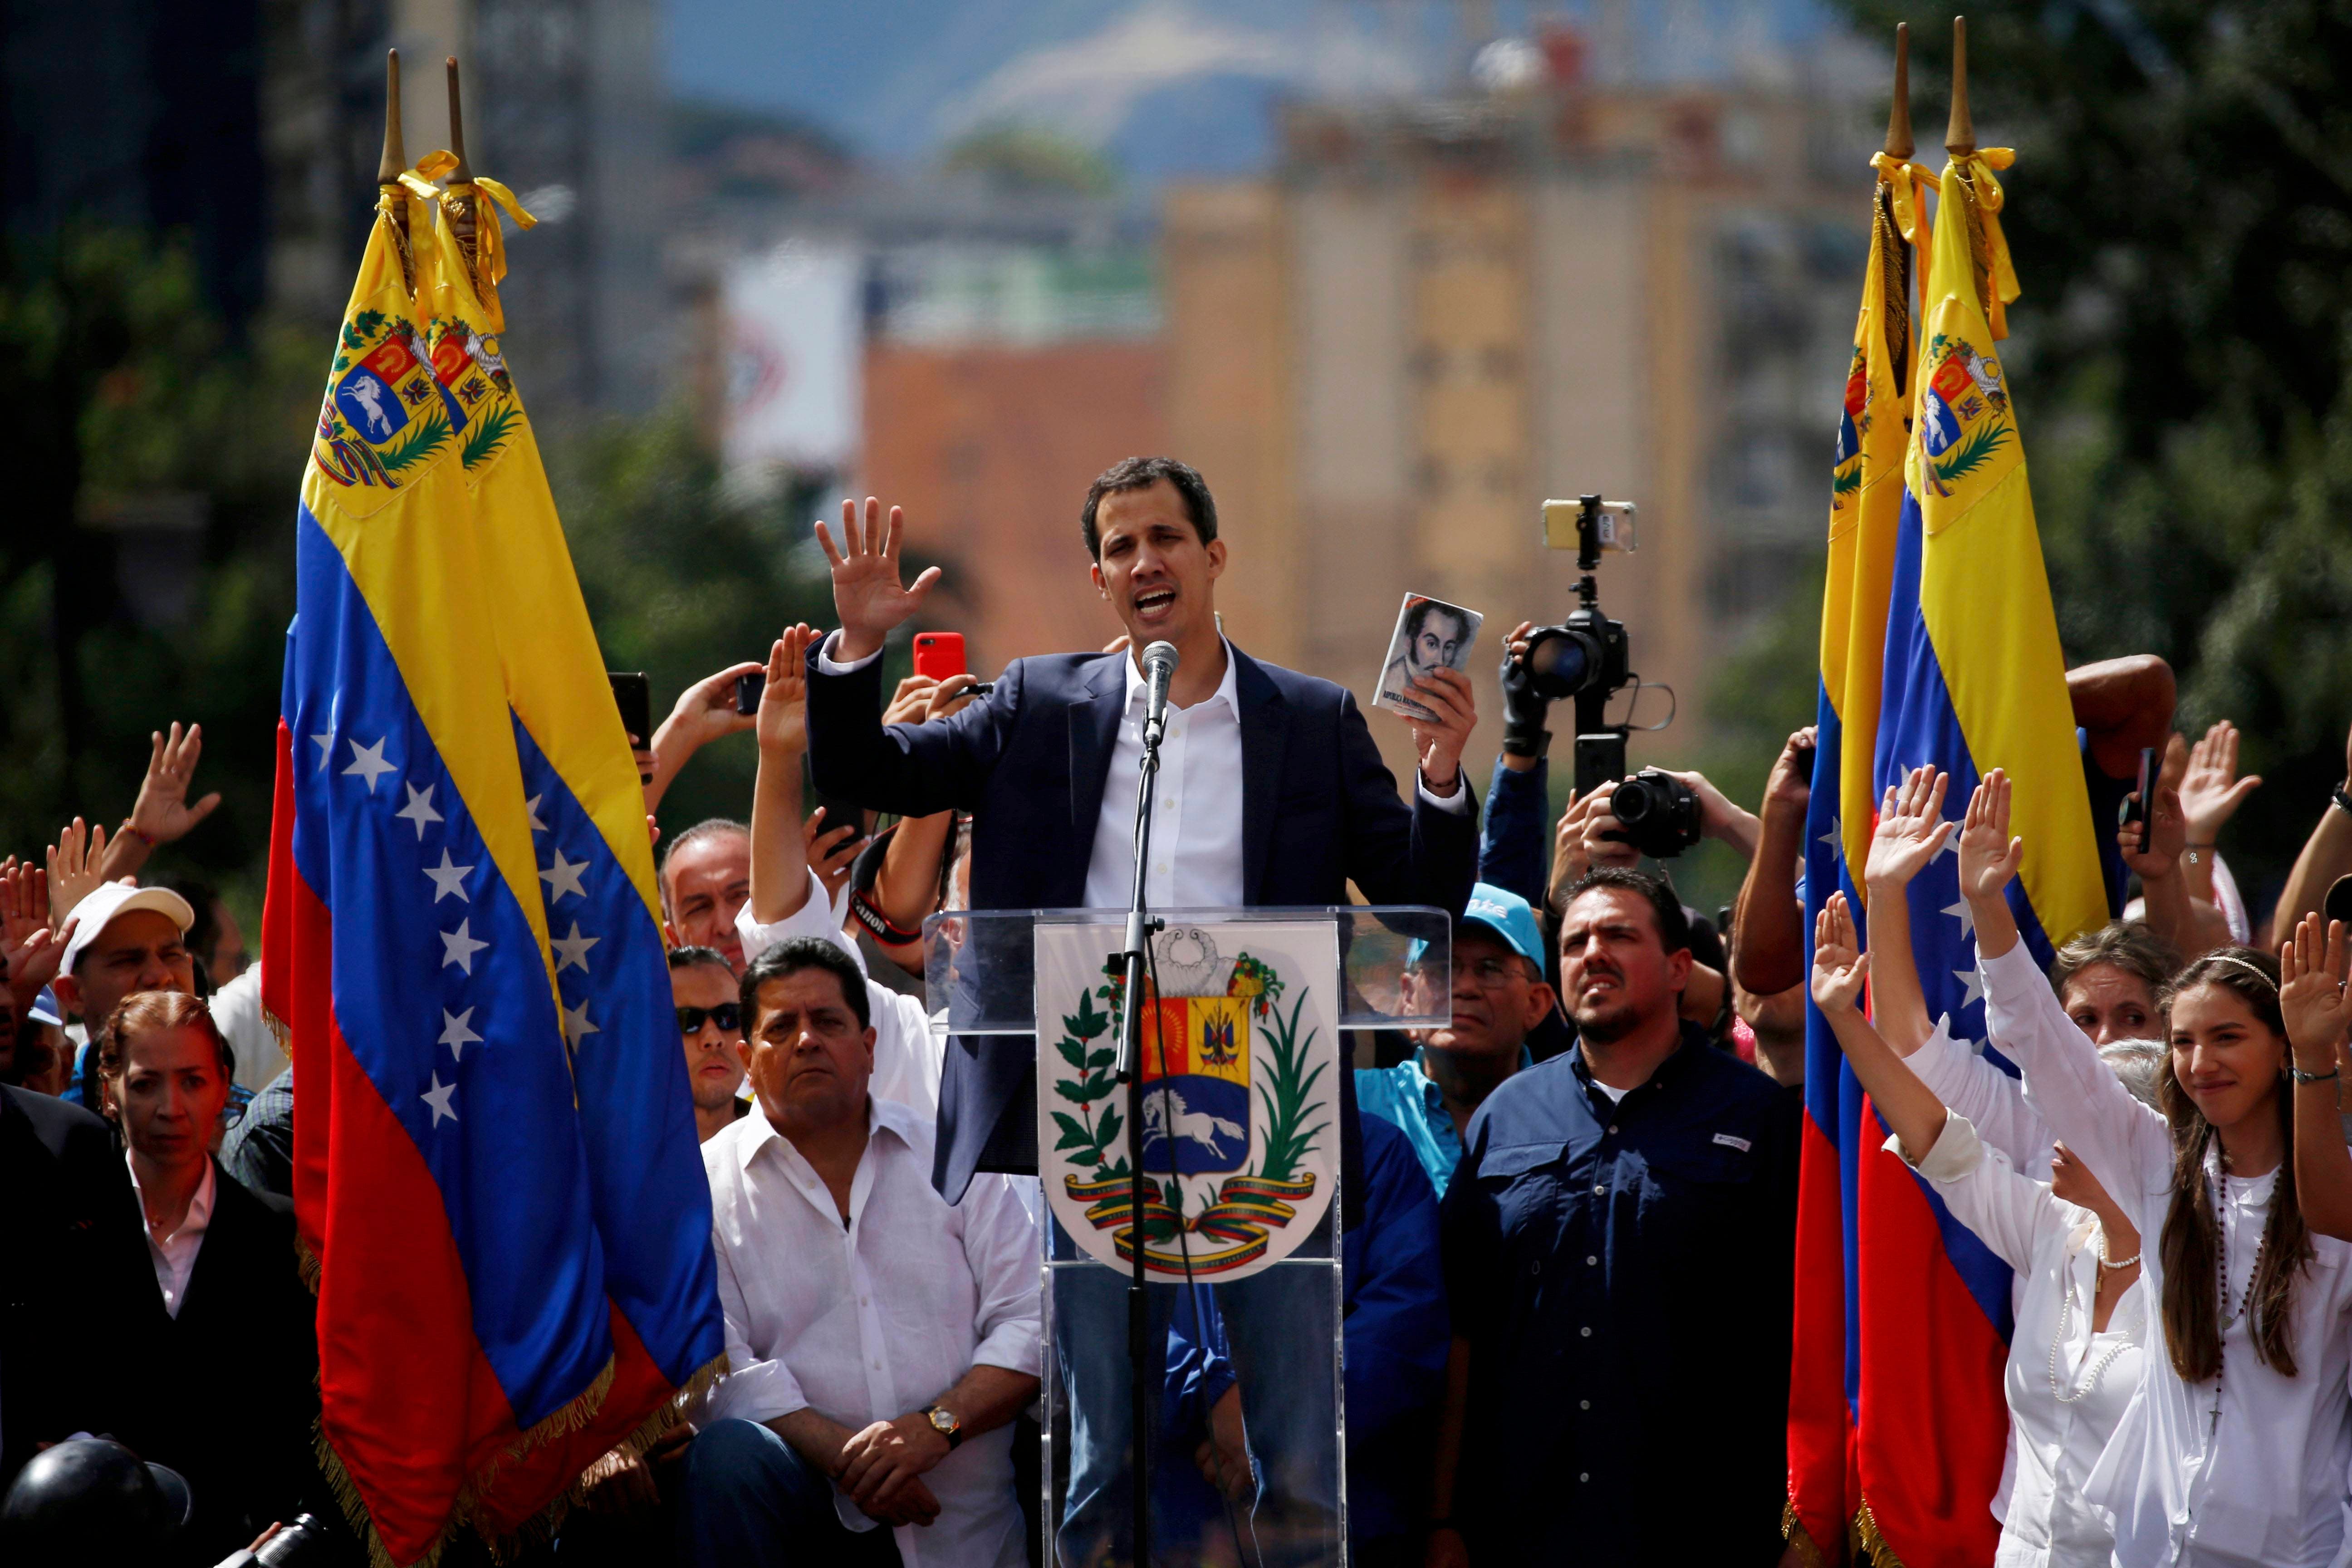 EEUU alerta de represalia si Maduro responde con violencia a toma de Guaidó